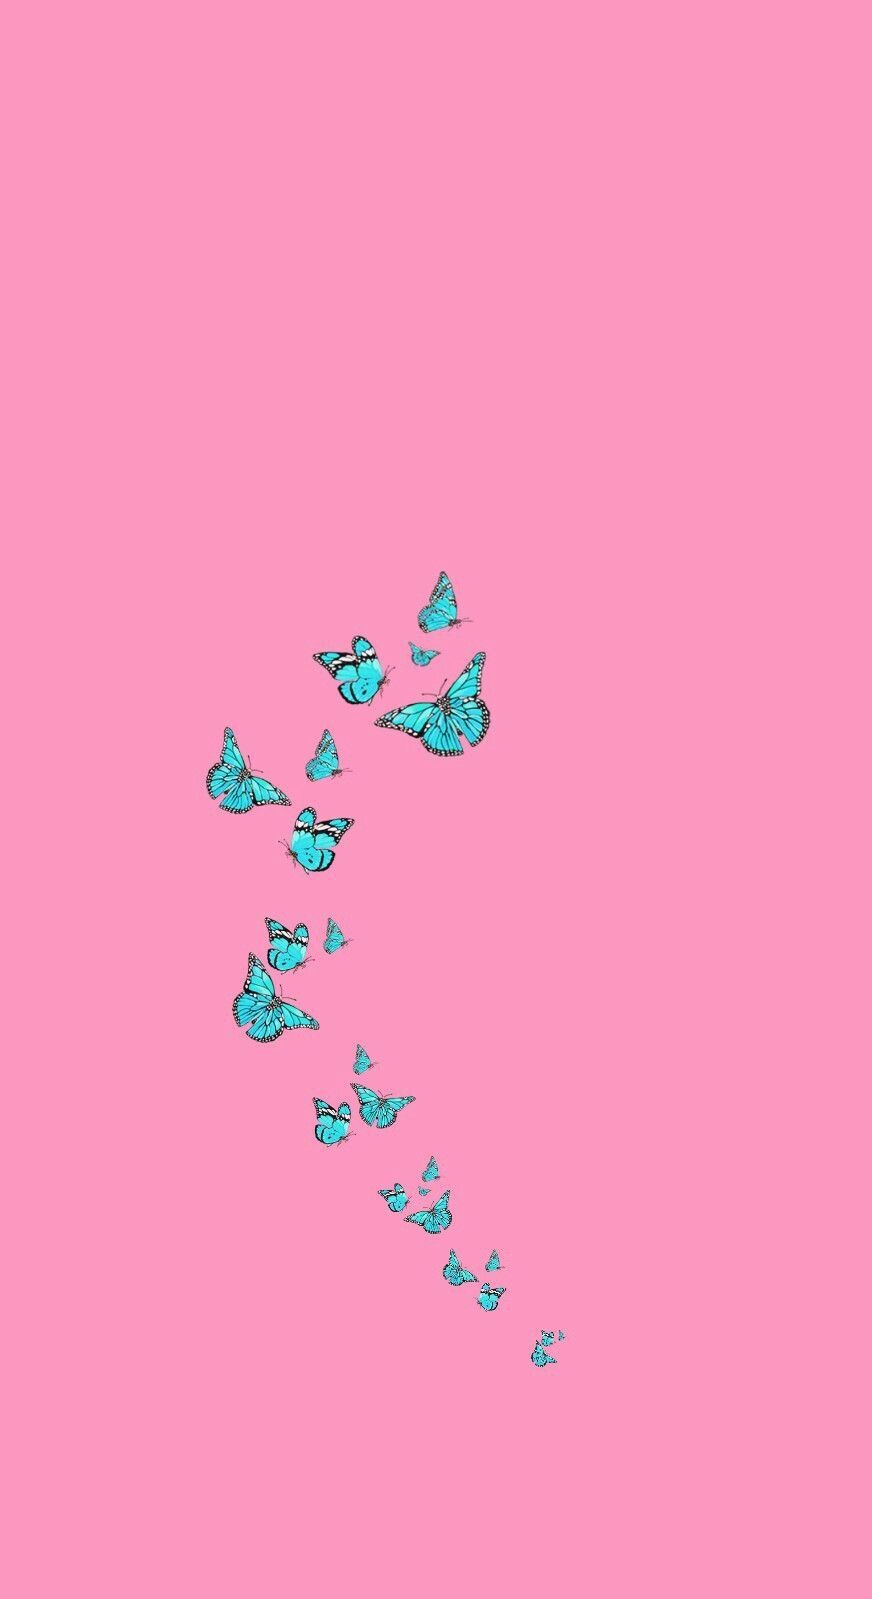 Aesthetic Vsco iPhone Wallpaper Butterfly